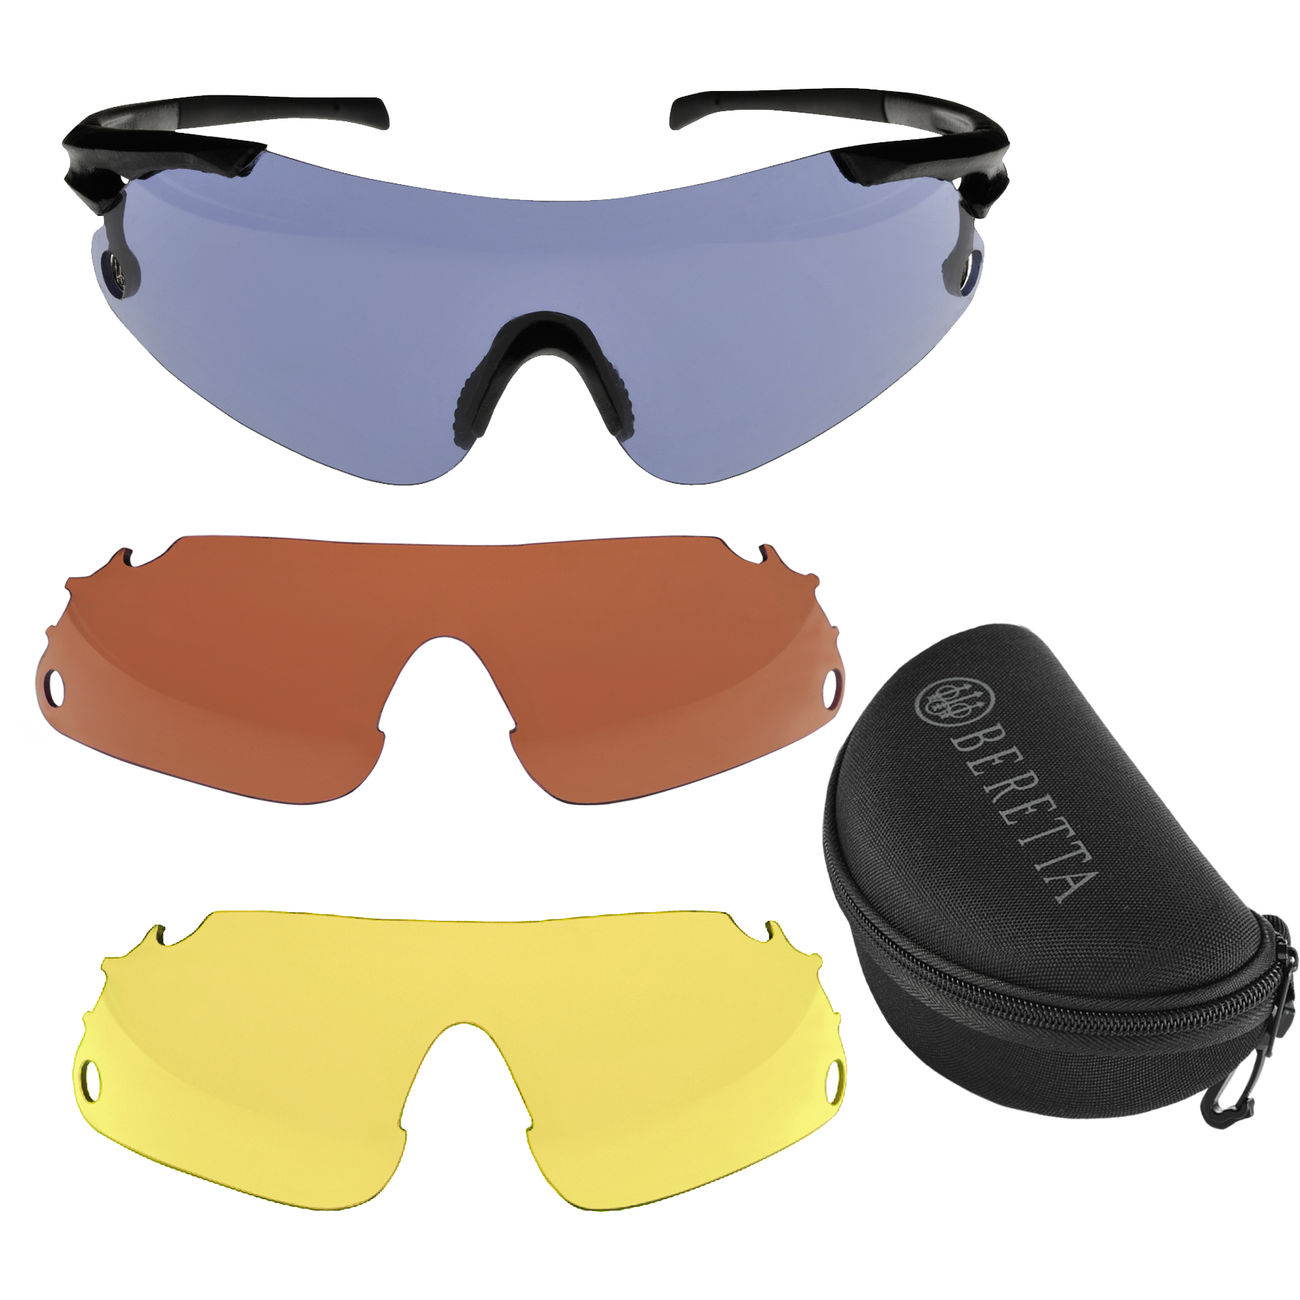 Beretta Schiebrillen Set mit 3 Wechsellinsen und Etui